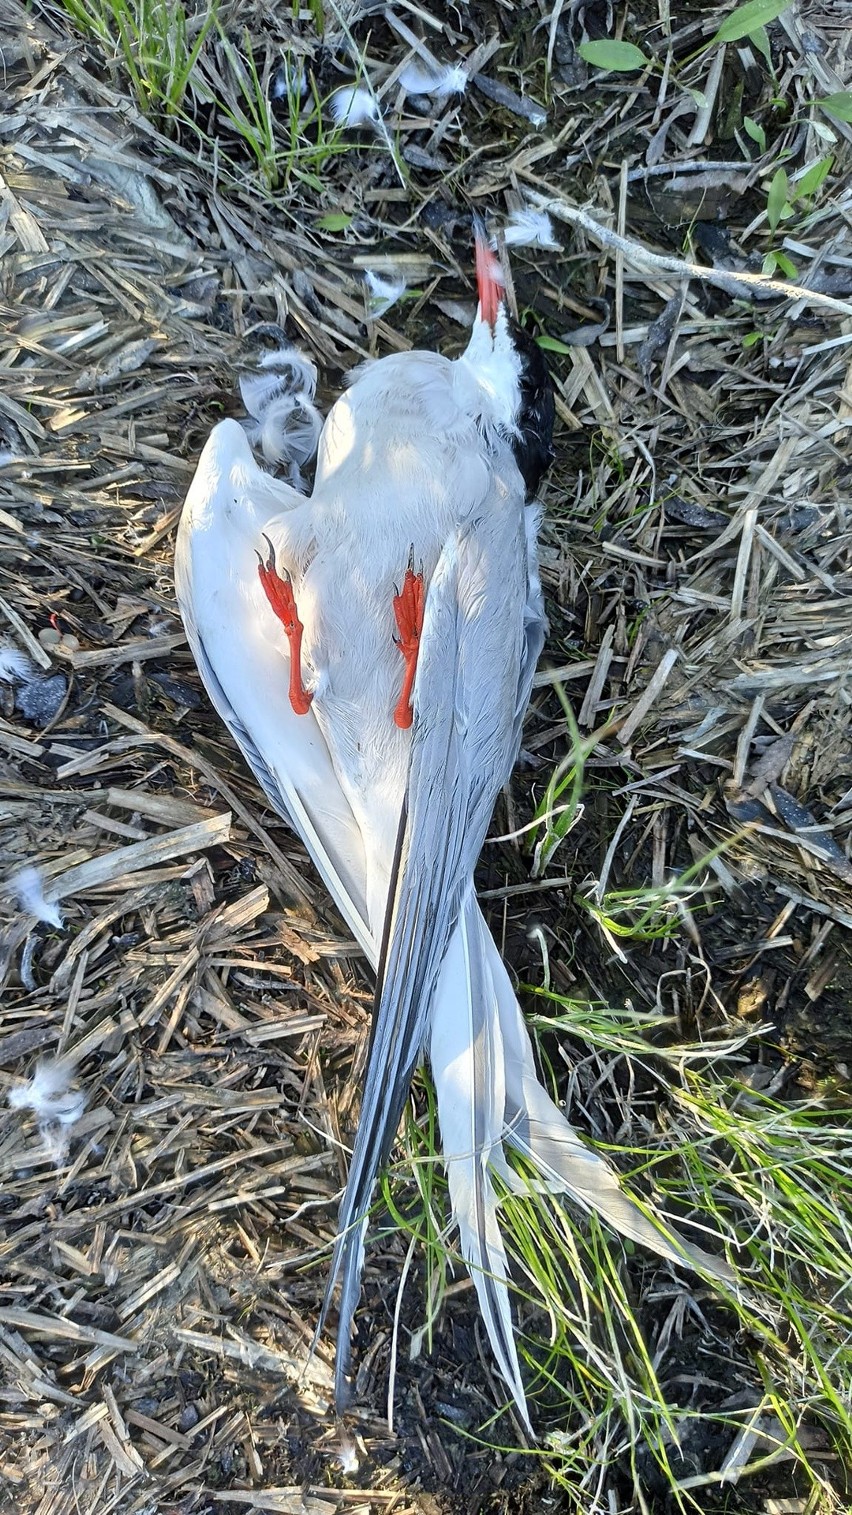 Martwe ptaki znalezione na brzegu Zbiornika Dobczyckiego